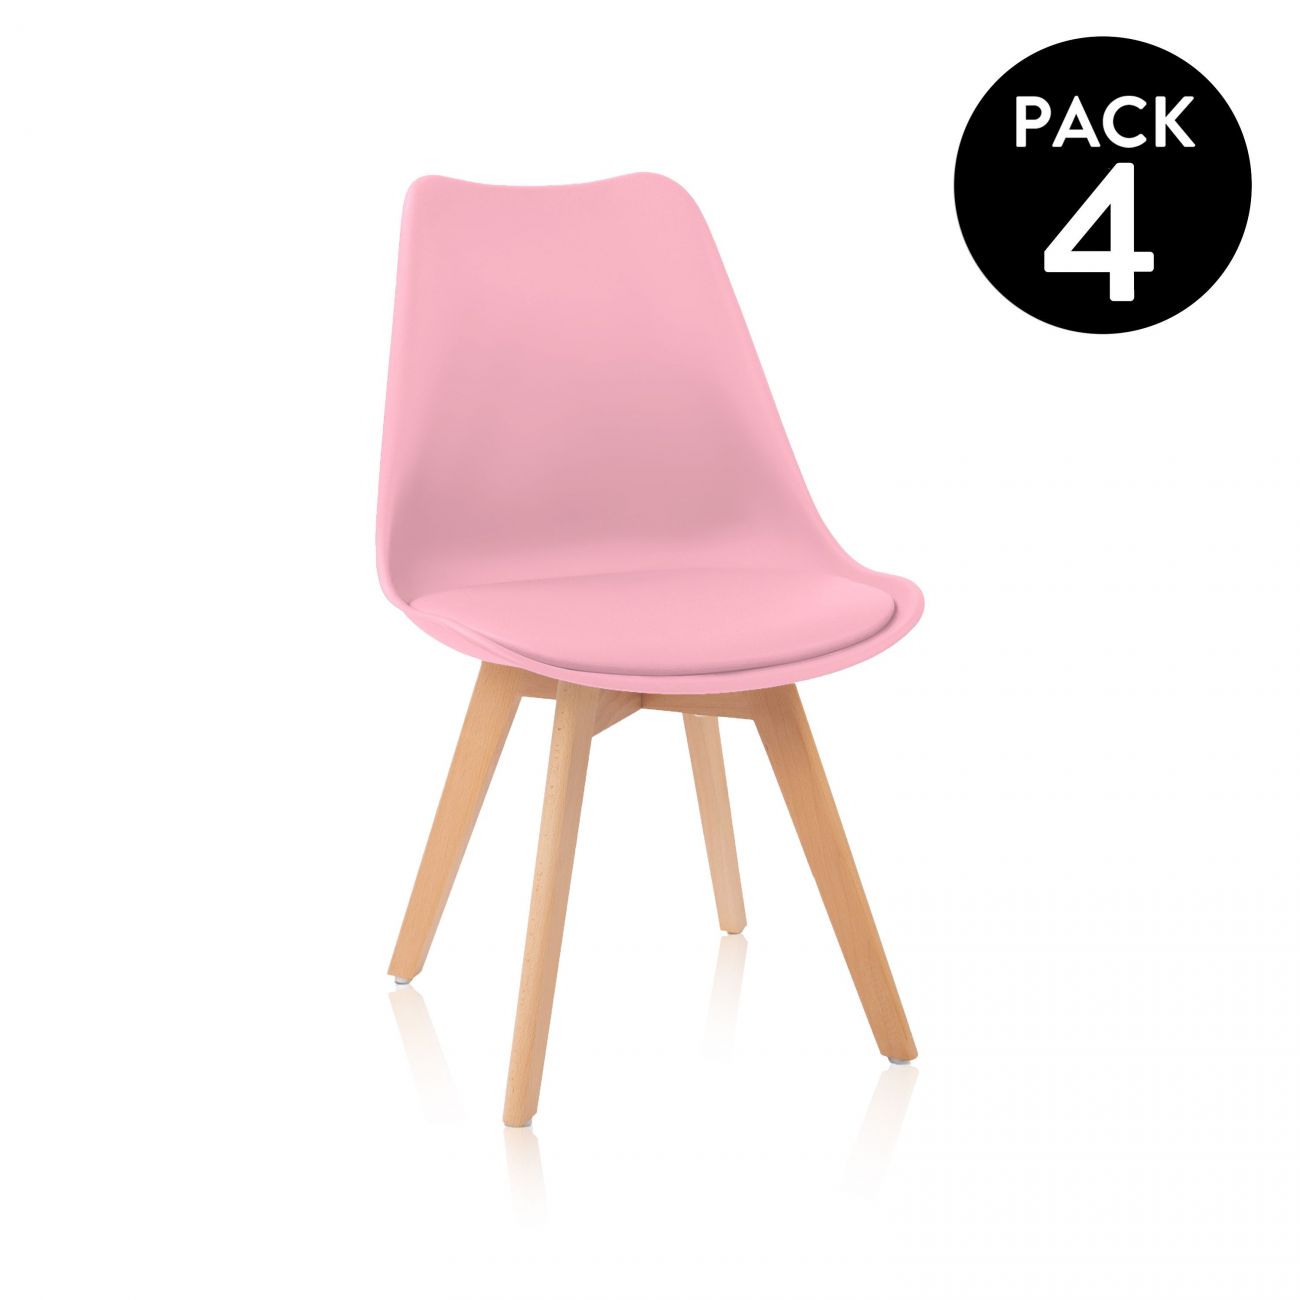 ▷ Pack 4 sillas de comedor Beench